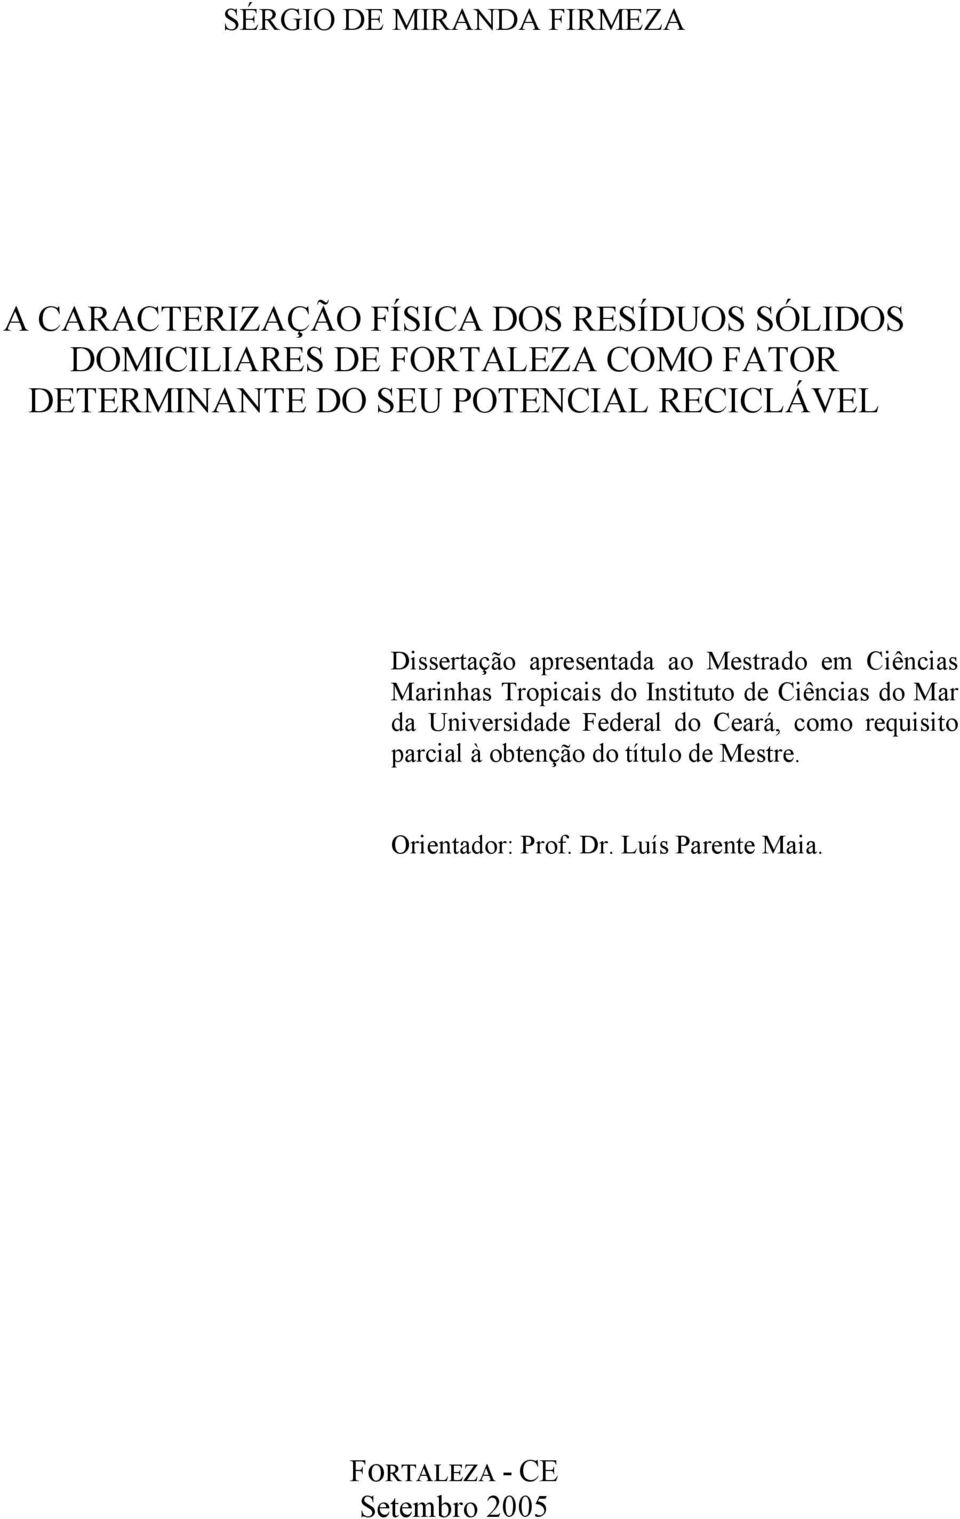 Marinhas Tropicais do Instituto de Ciências do Mar da Universidade Federal do Ceará, como requisito